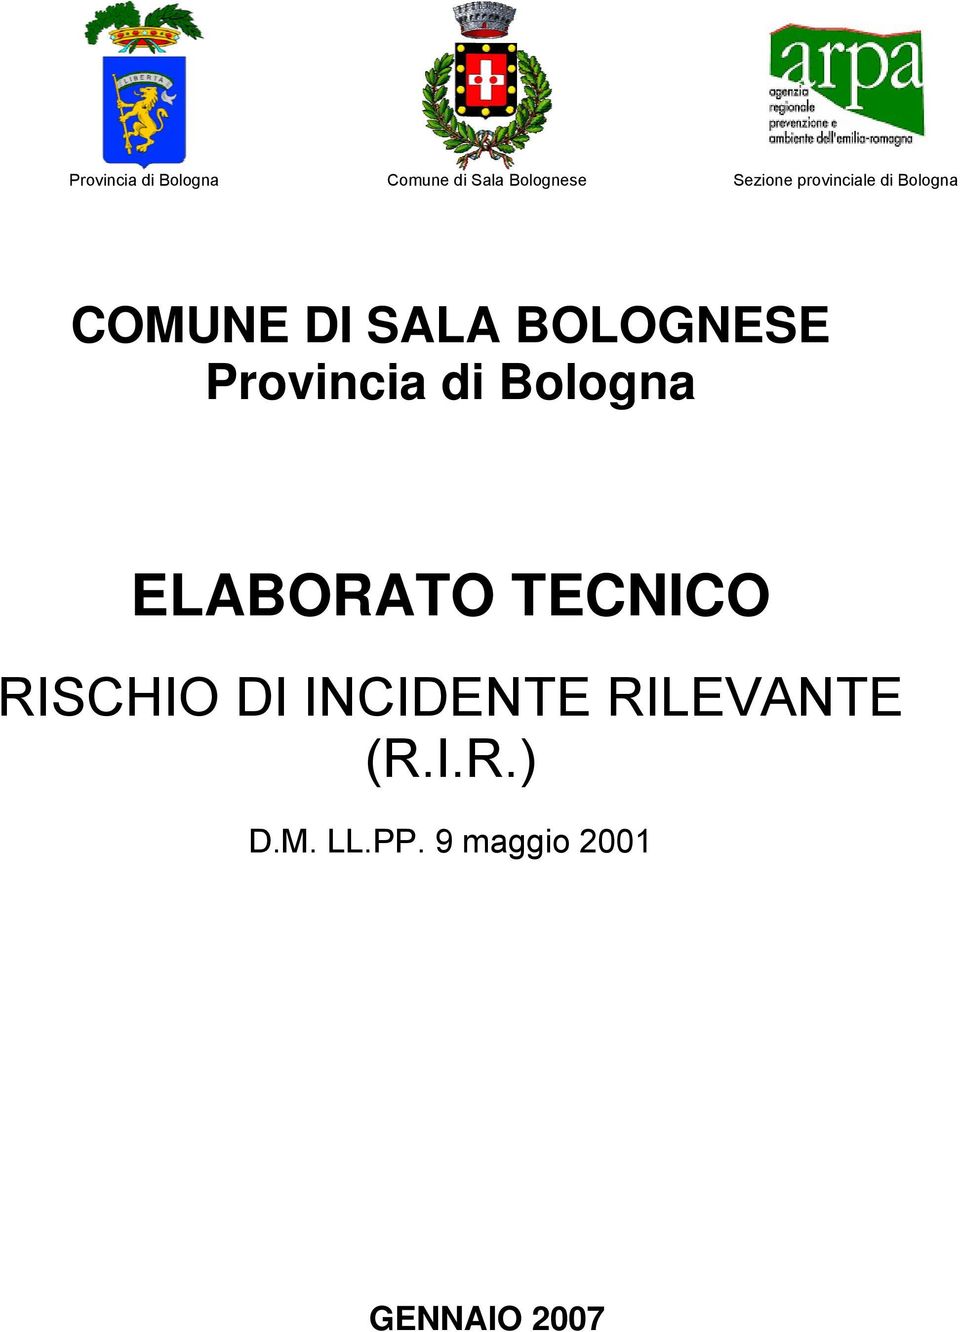 Provincia di Bologna ELABORATO TECNICO RISCHIO DI